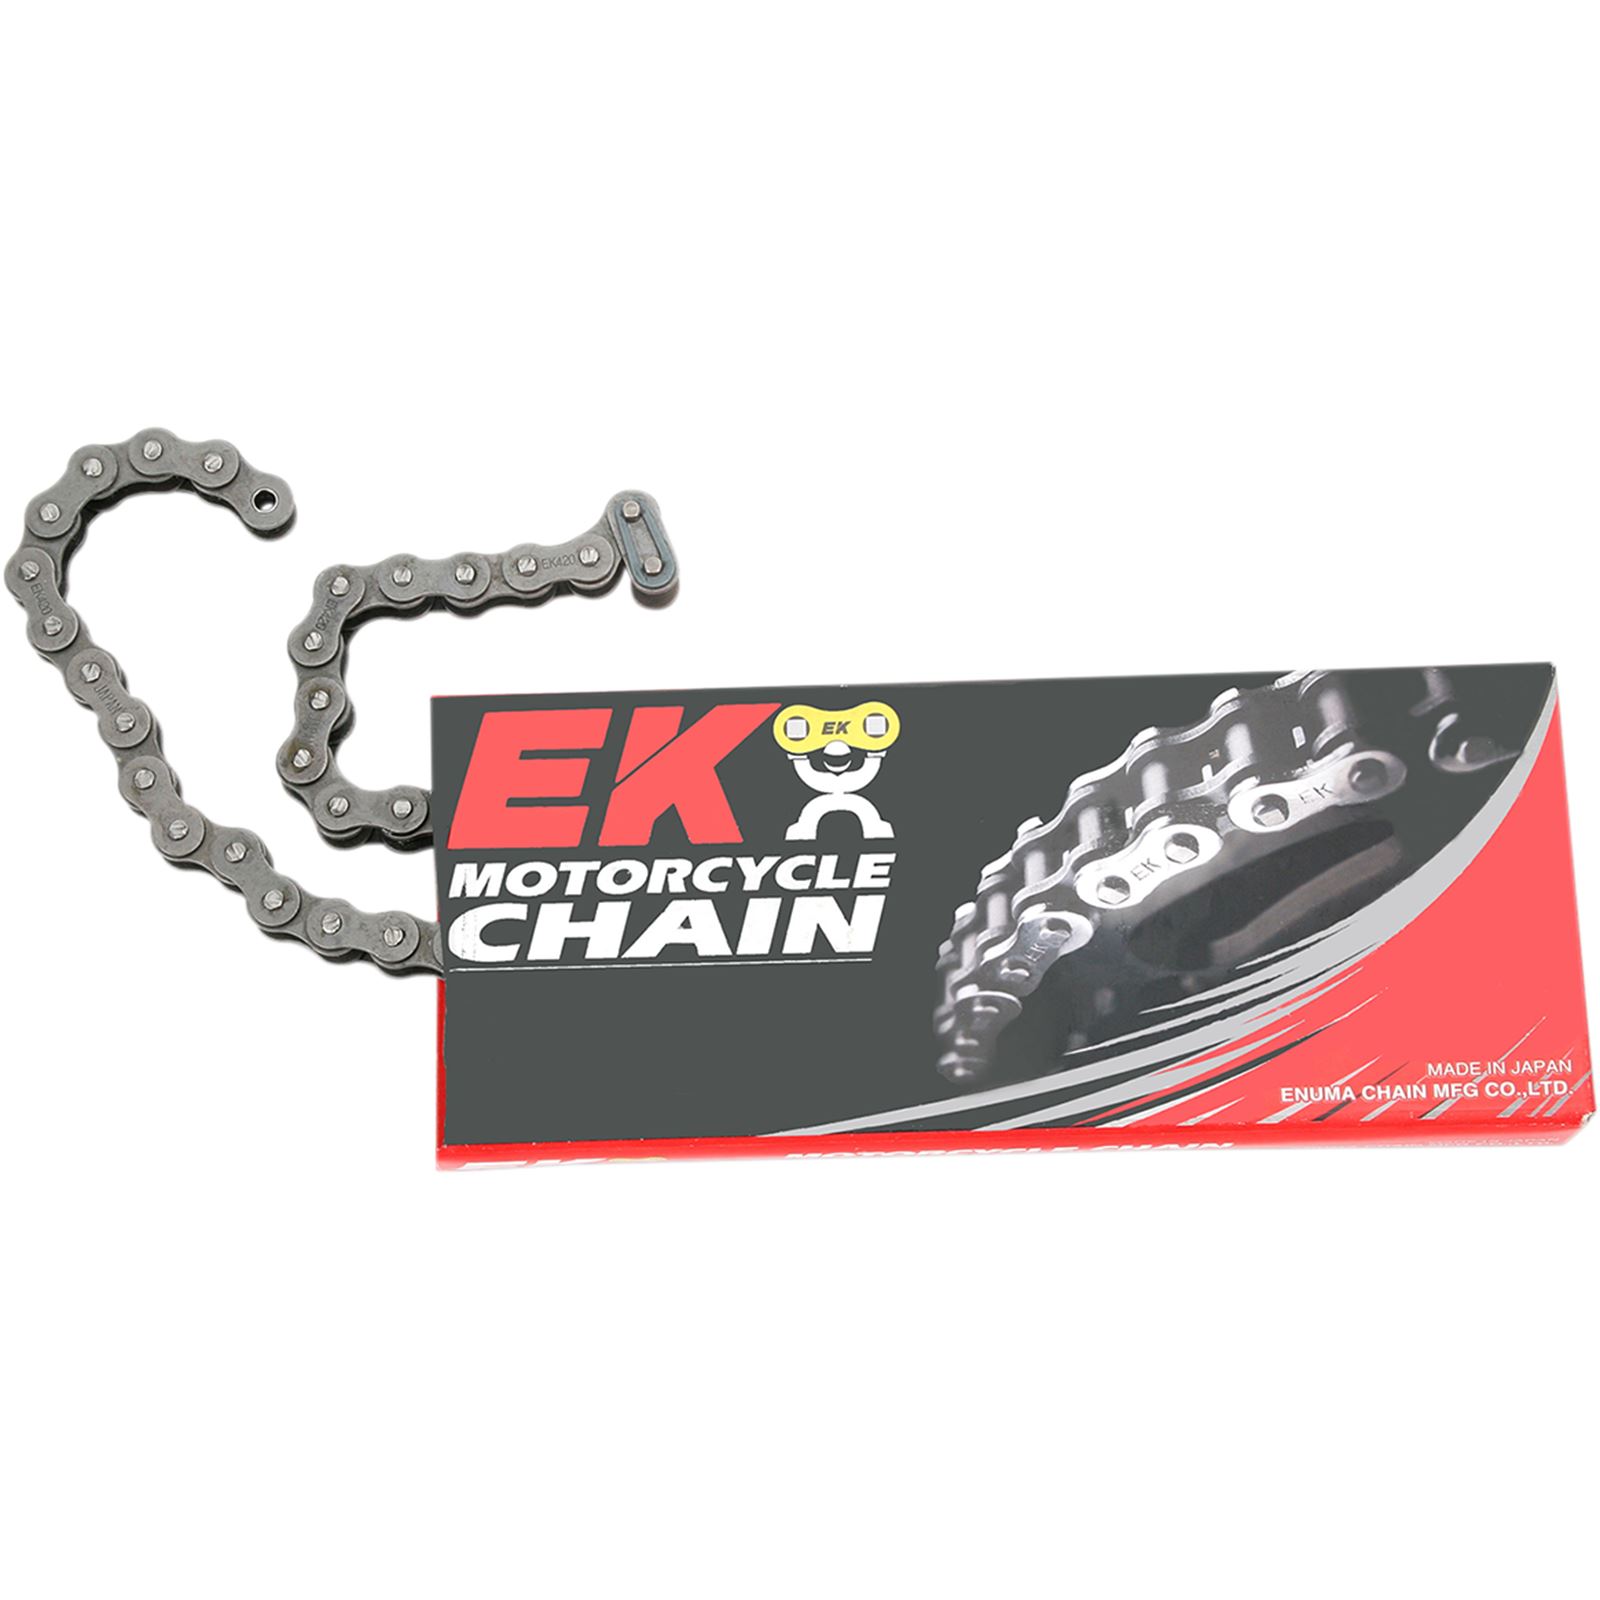 EK 420 - Standard Non-Sealed Chain - 96 Links